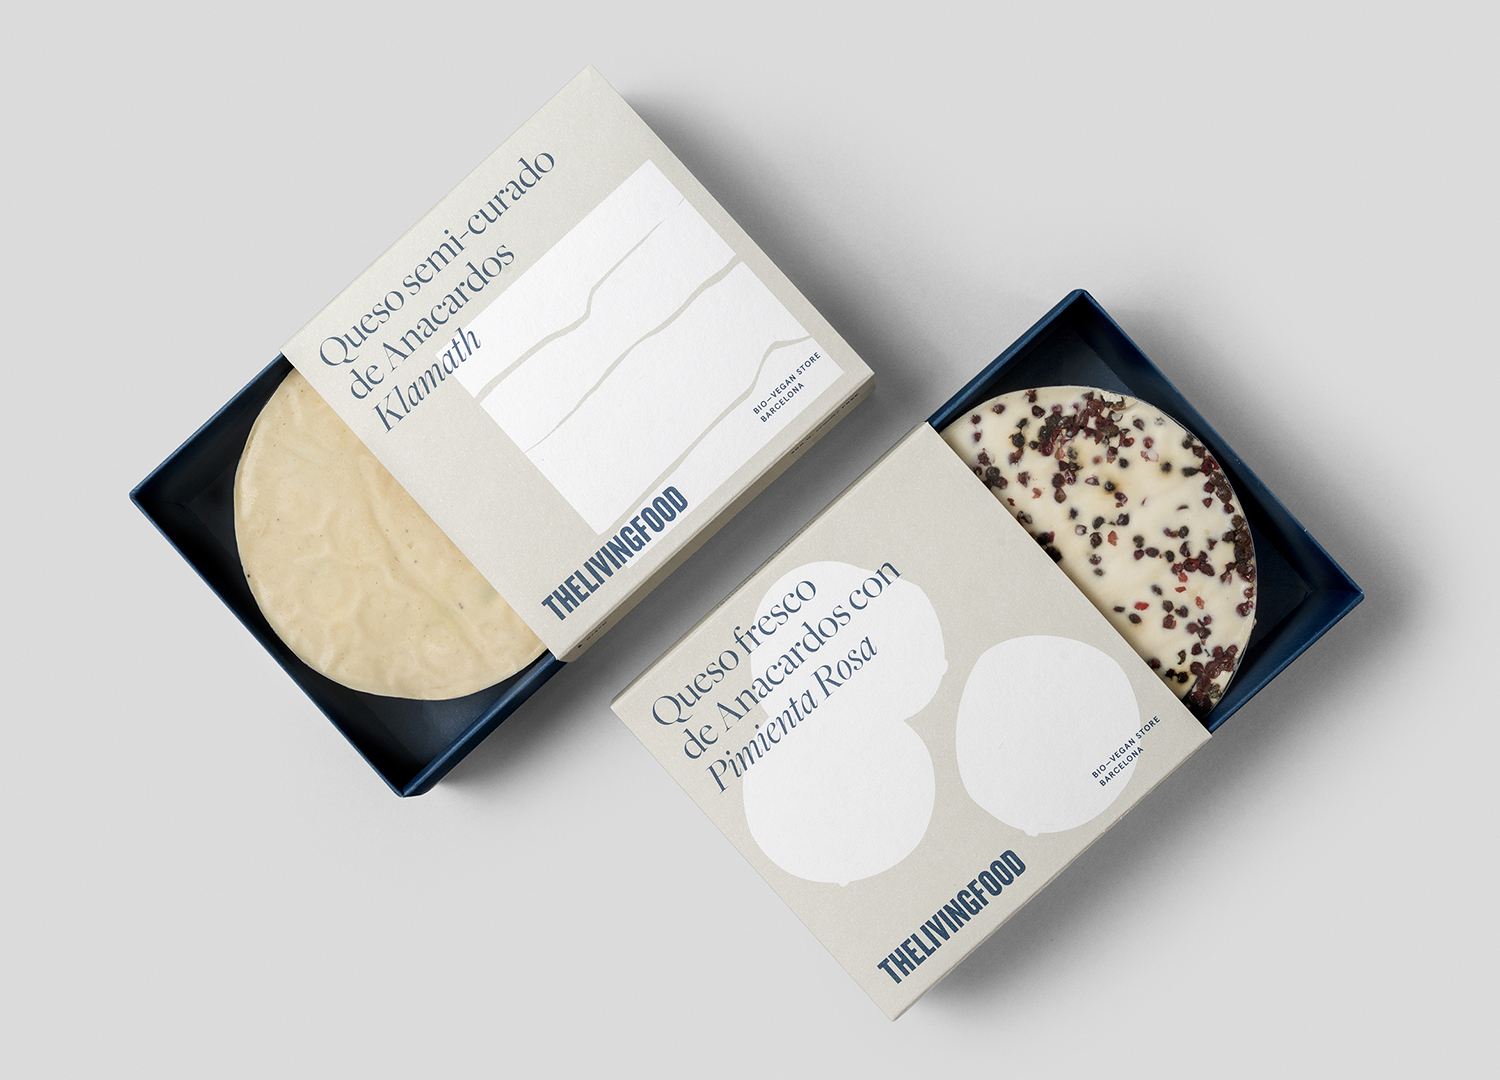 Packaging design by Barcelona-based Francesc Moret Studio for vegan cheese range from The Living Food